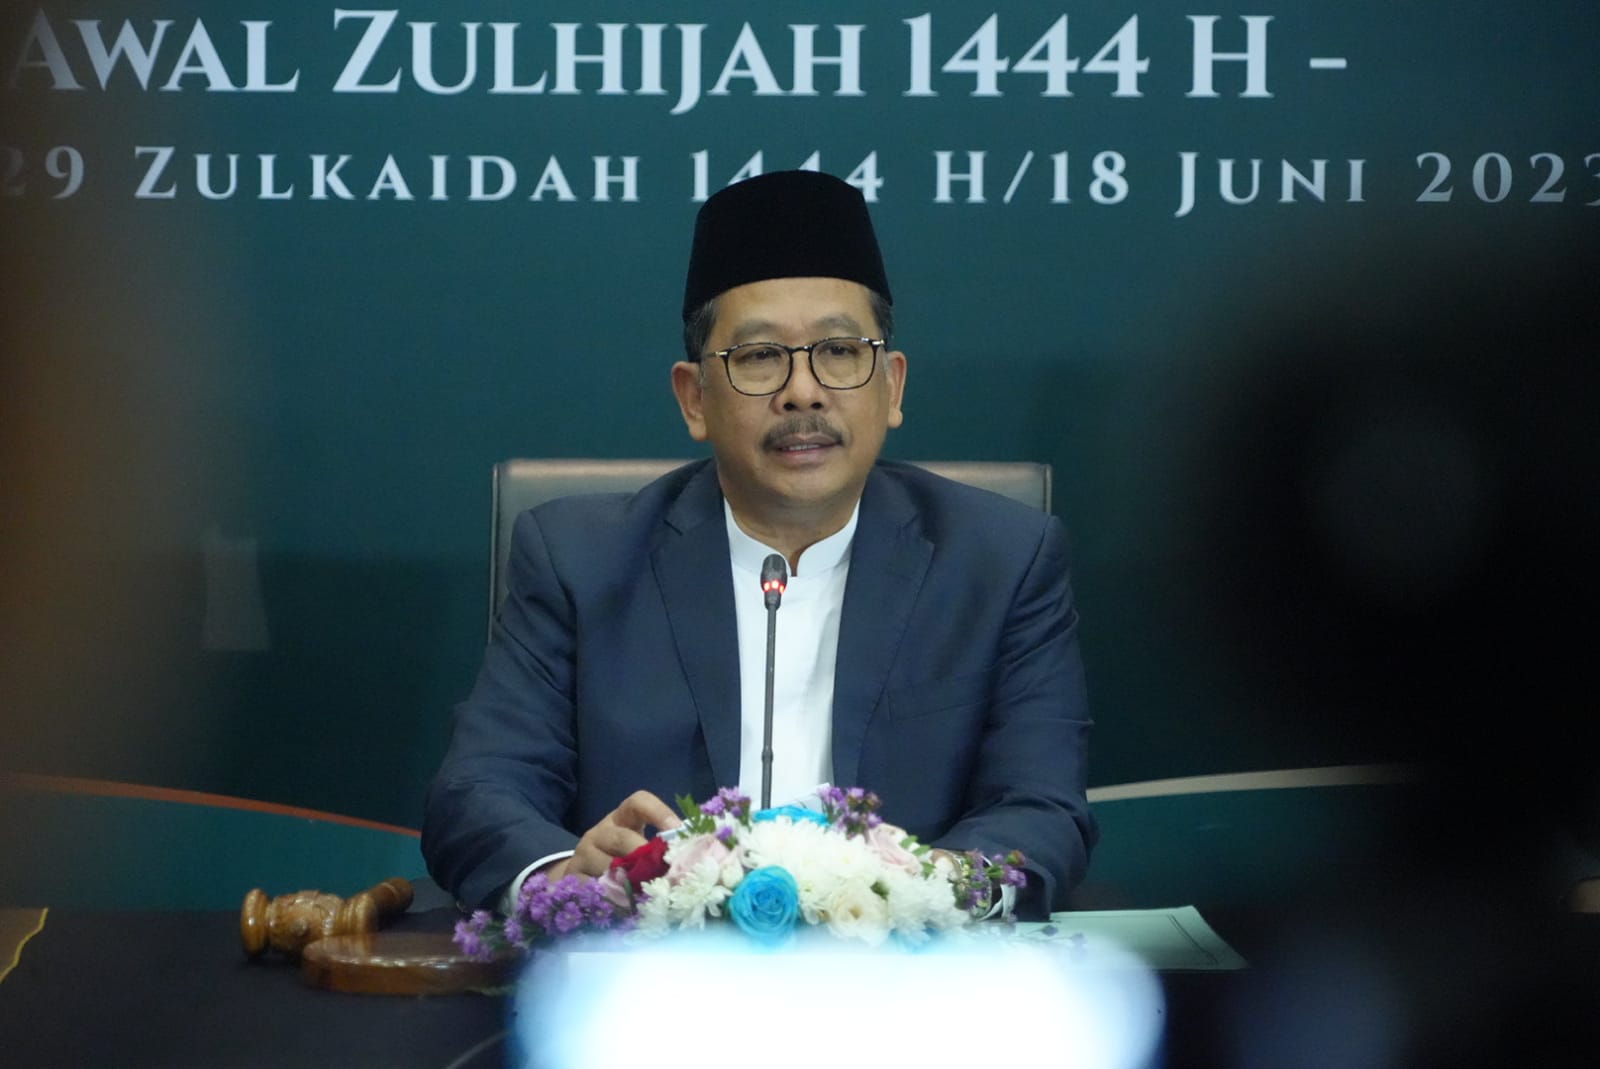 Wakil Menteri Agama Imbau Umat Muslim Toleransi Jika Terdapat Perbedaan Idul Adha